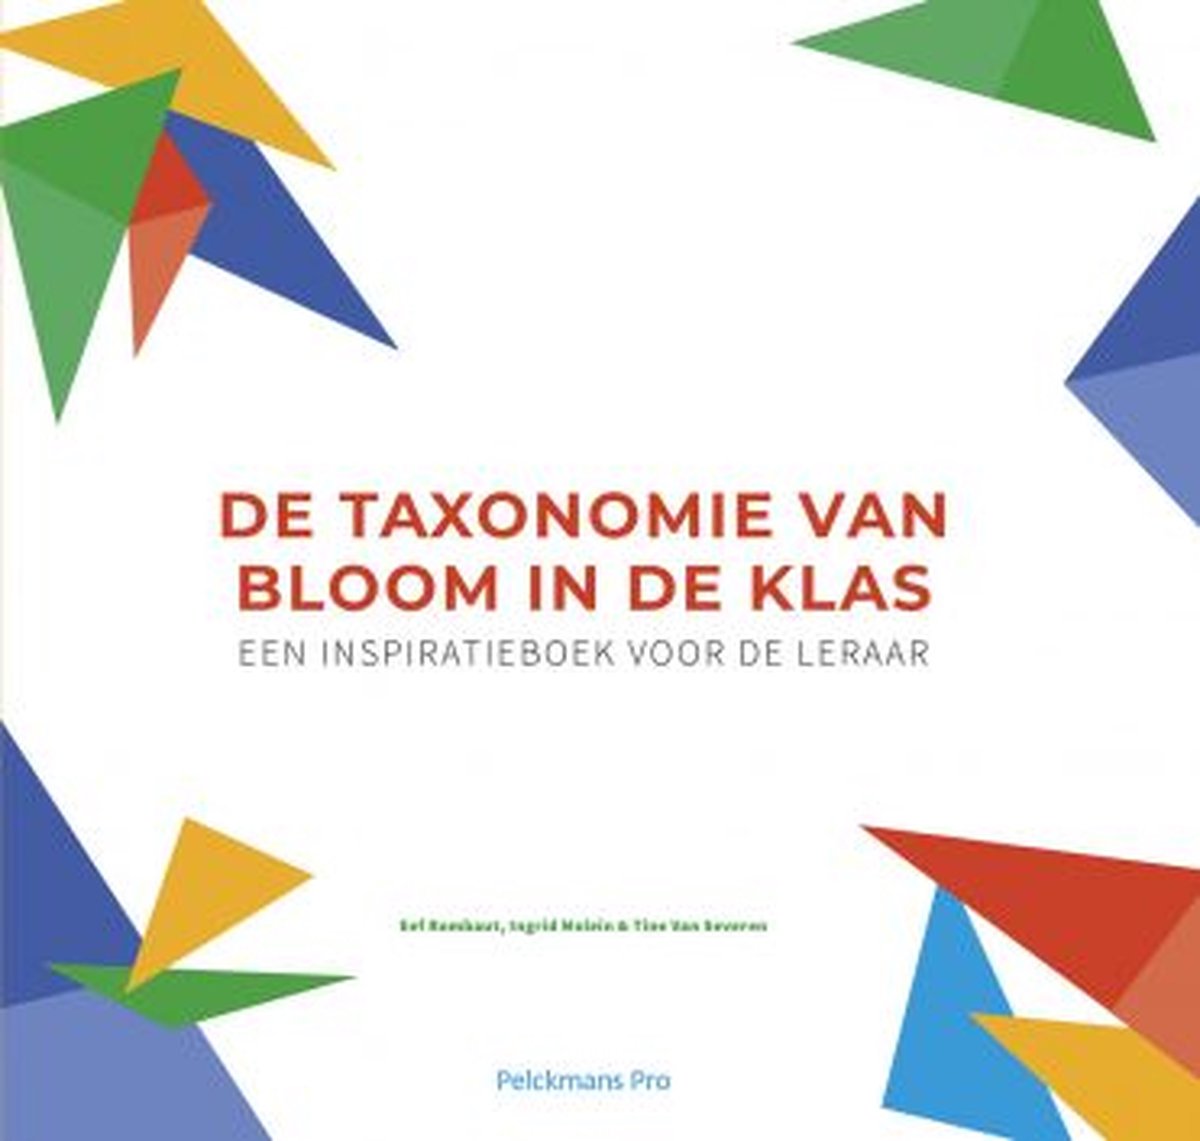 De taxonomie van Bloom in de klas